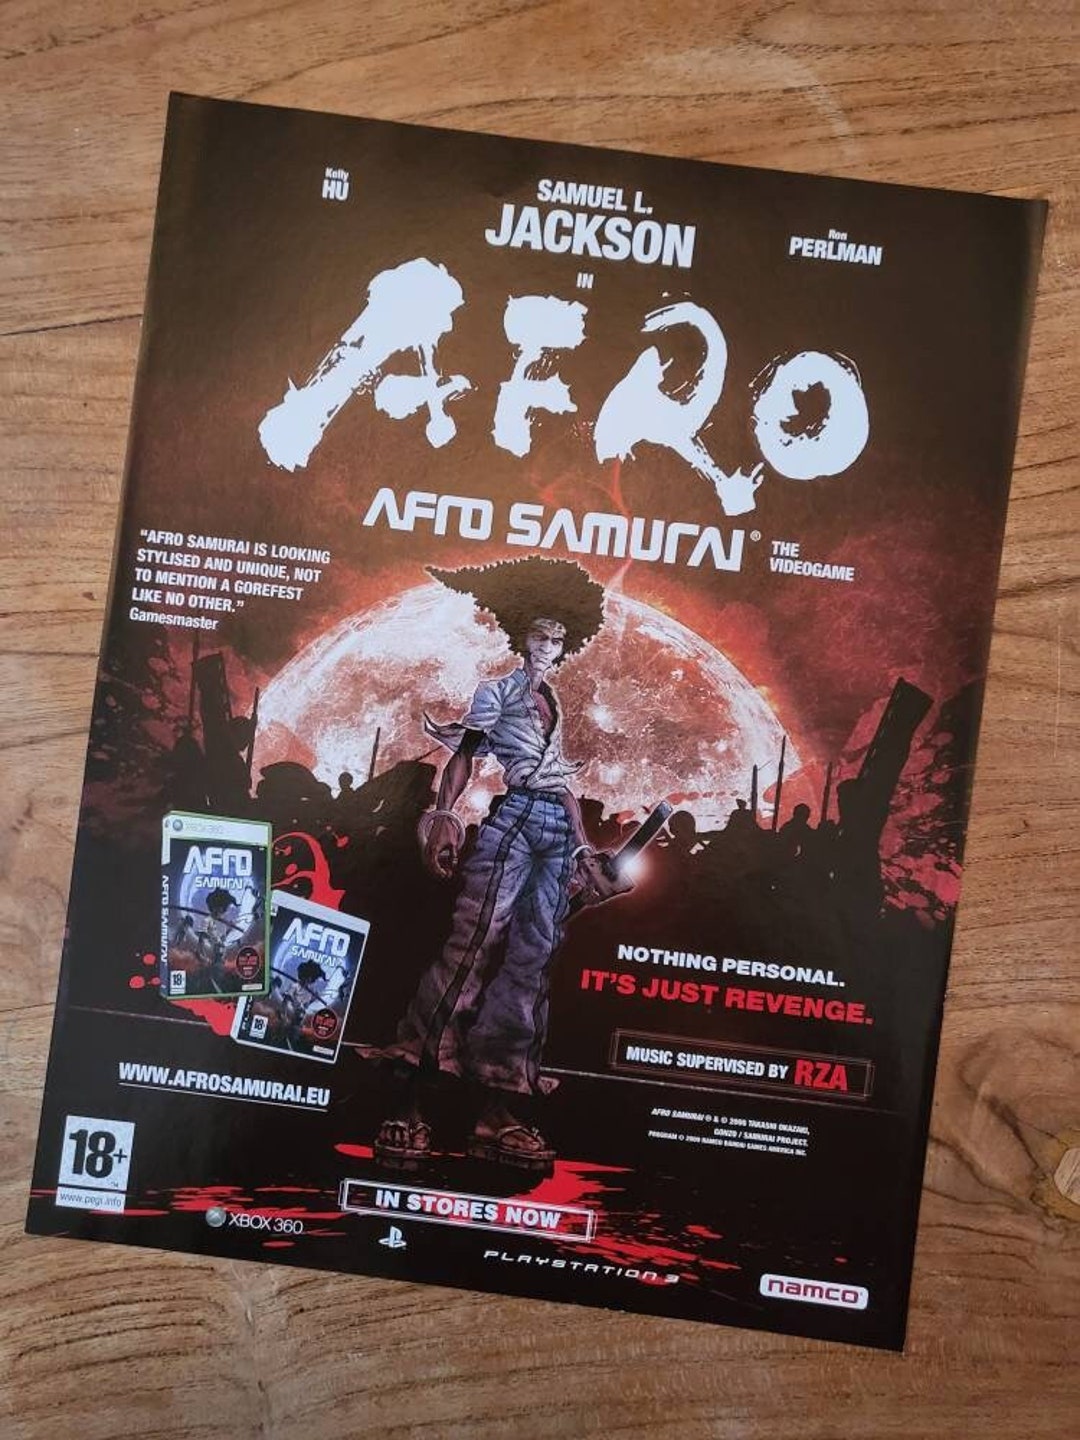 Afro Samurai em Live-Action e com o Samuel L. Jackson